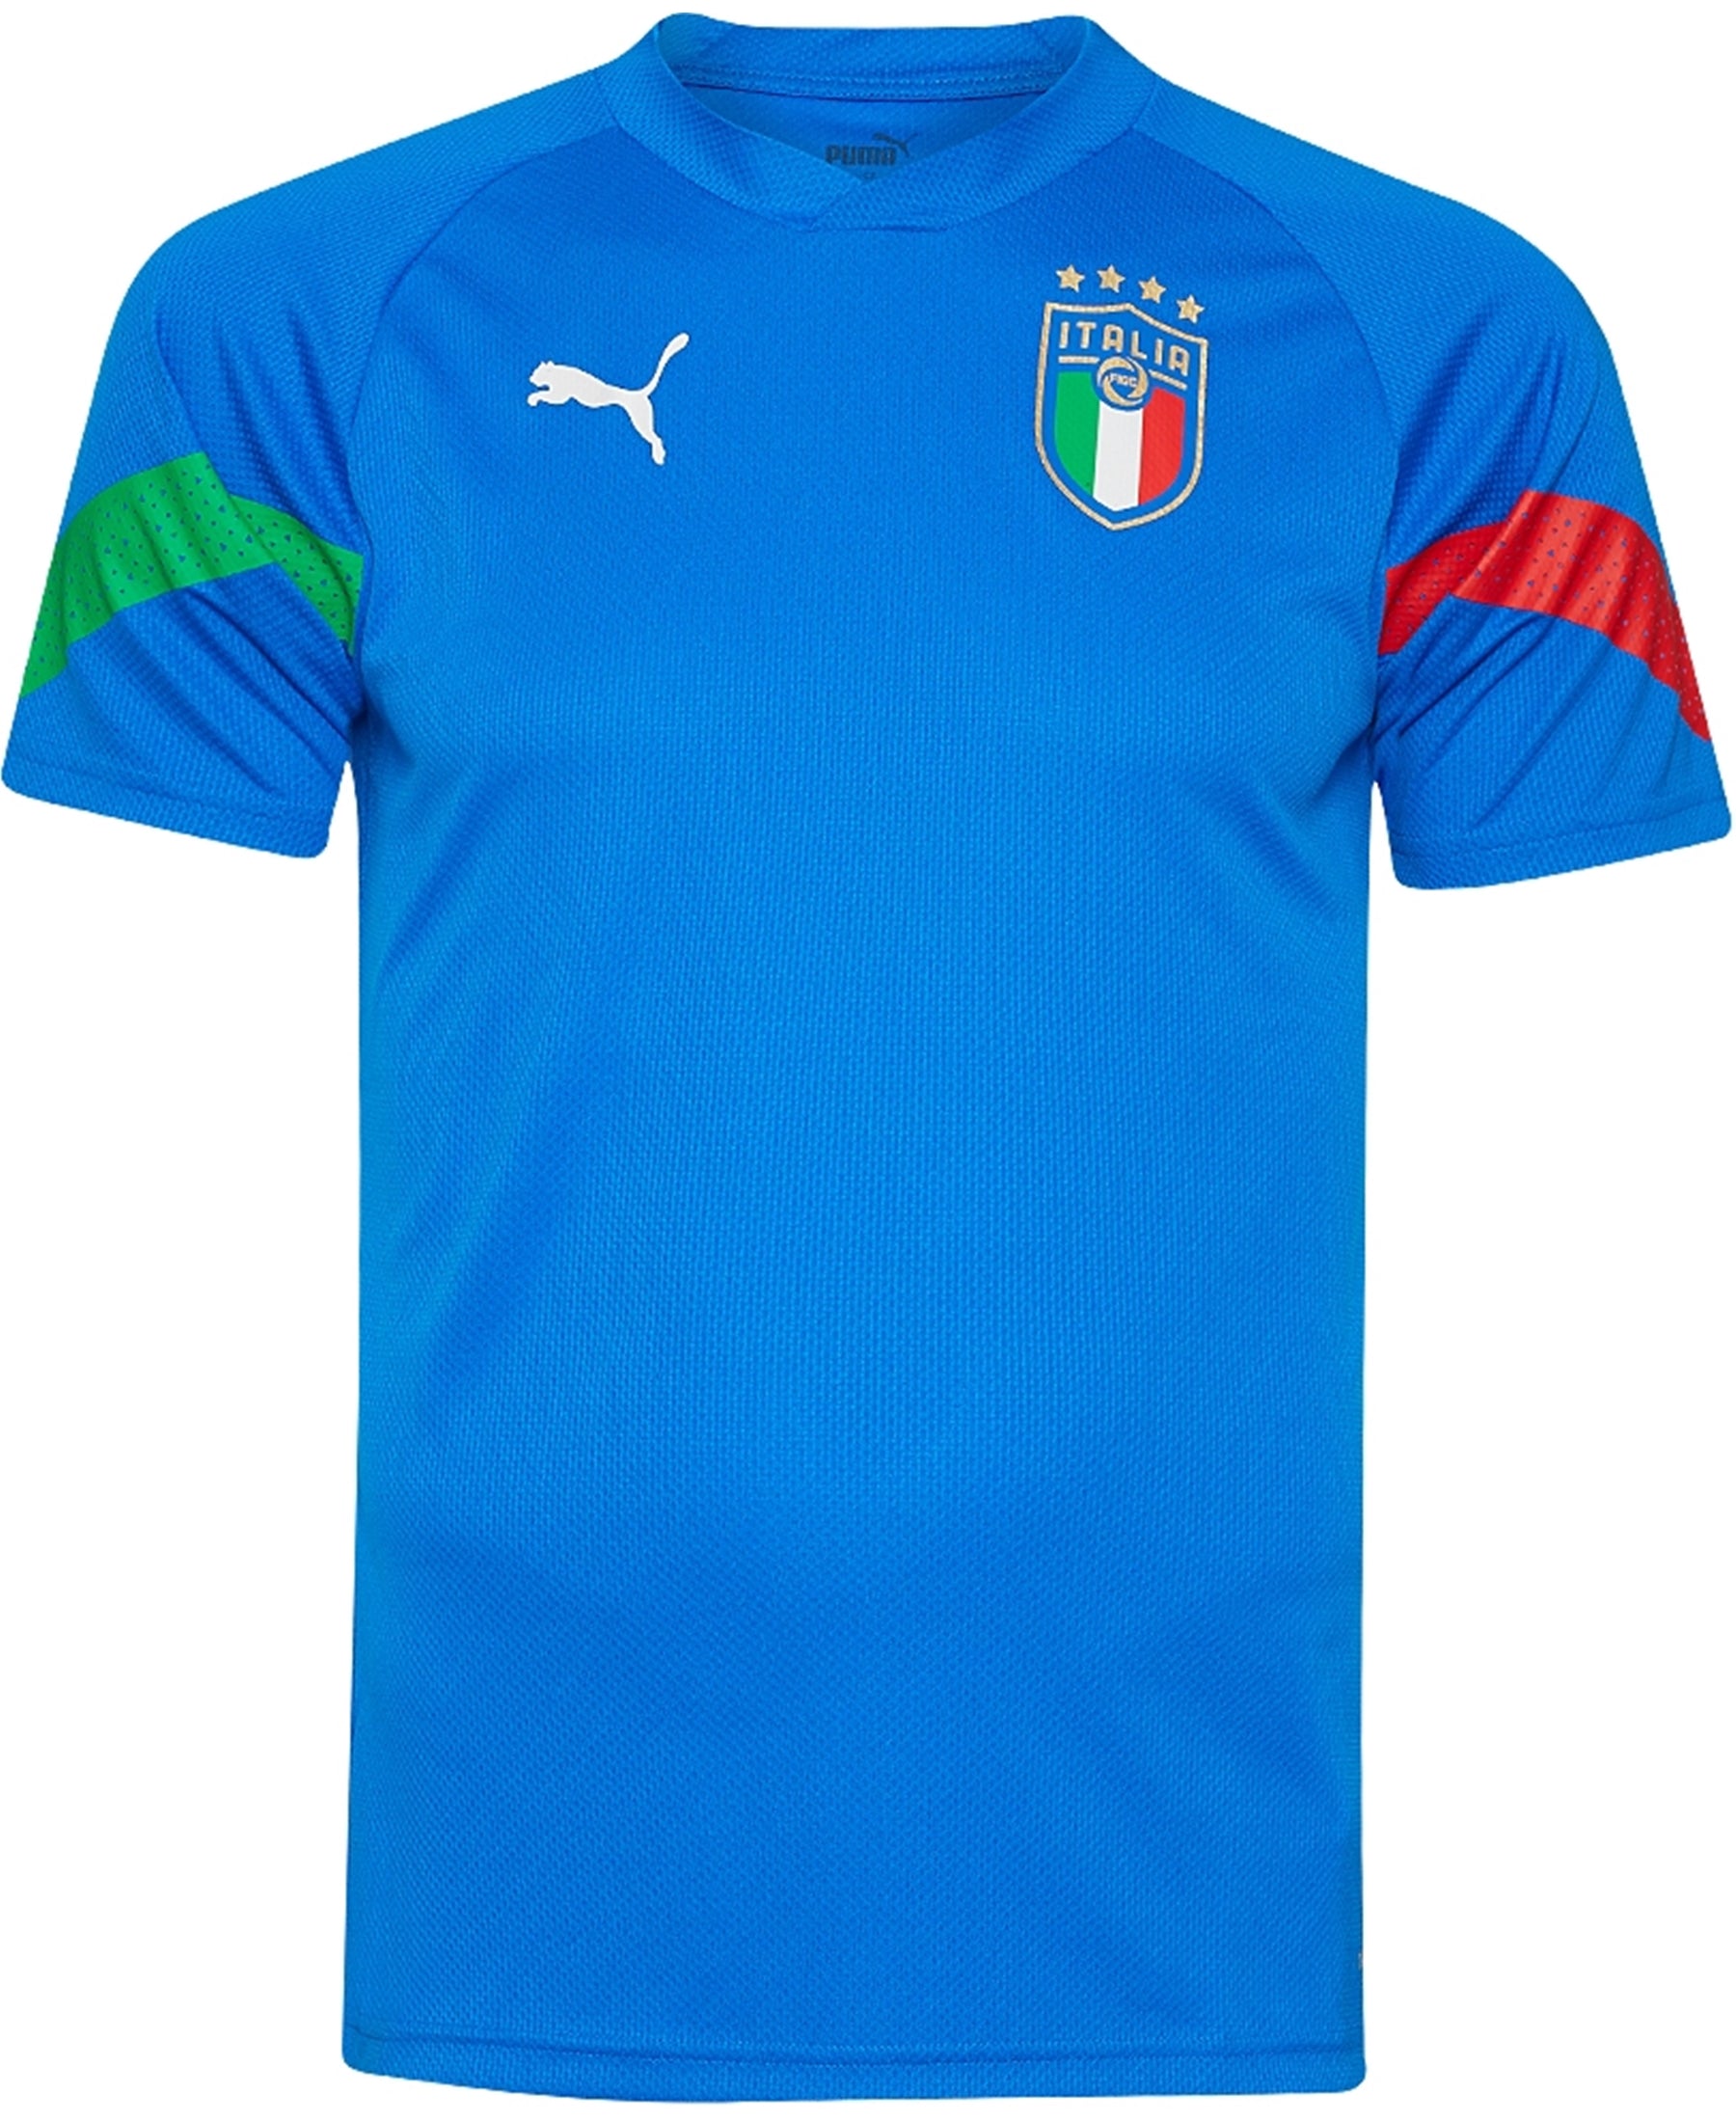 Sichern Sie sich das Puma Italien FIGC Player Trainingsshirt 2022-2023 (767080-03) bei SHOP4TEAMSPORT. Mit diesem offiziell lizenzierten Shirt zeigen Sie Ihre Unterstützung für die Squadra Azzurra. Es bietet Komfort und Leistungsfähigkeit für Ihr Training und den Alltag. Holen Sie sich jetzt Ihren italienischen Fußballstil!